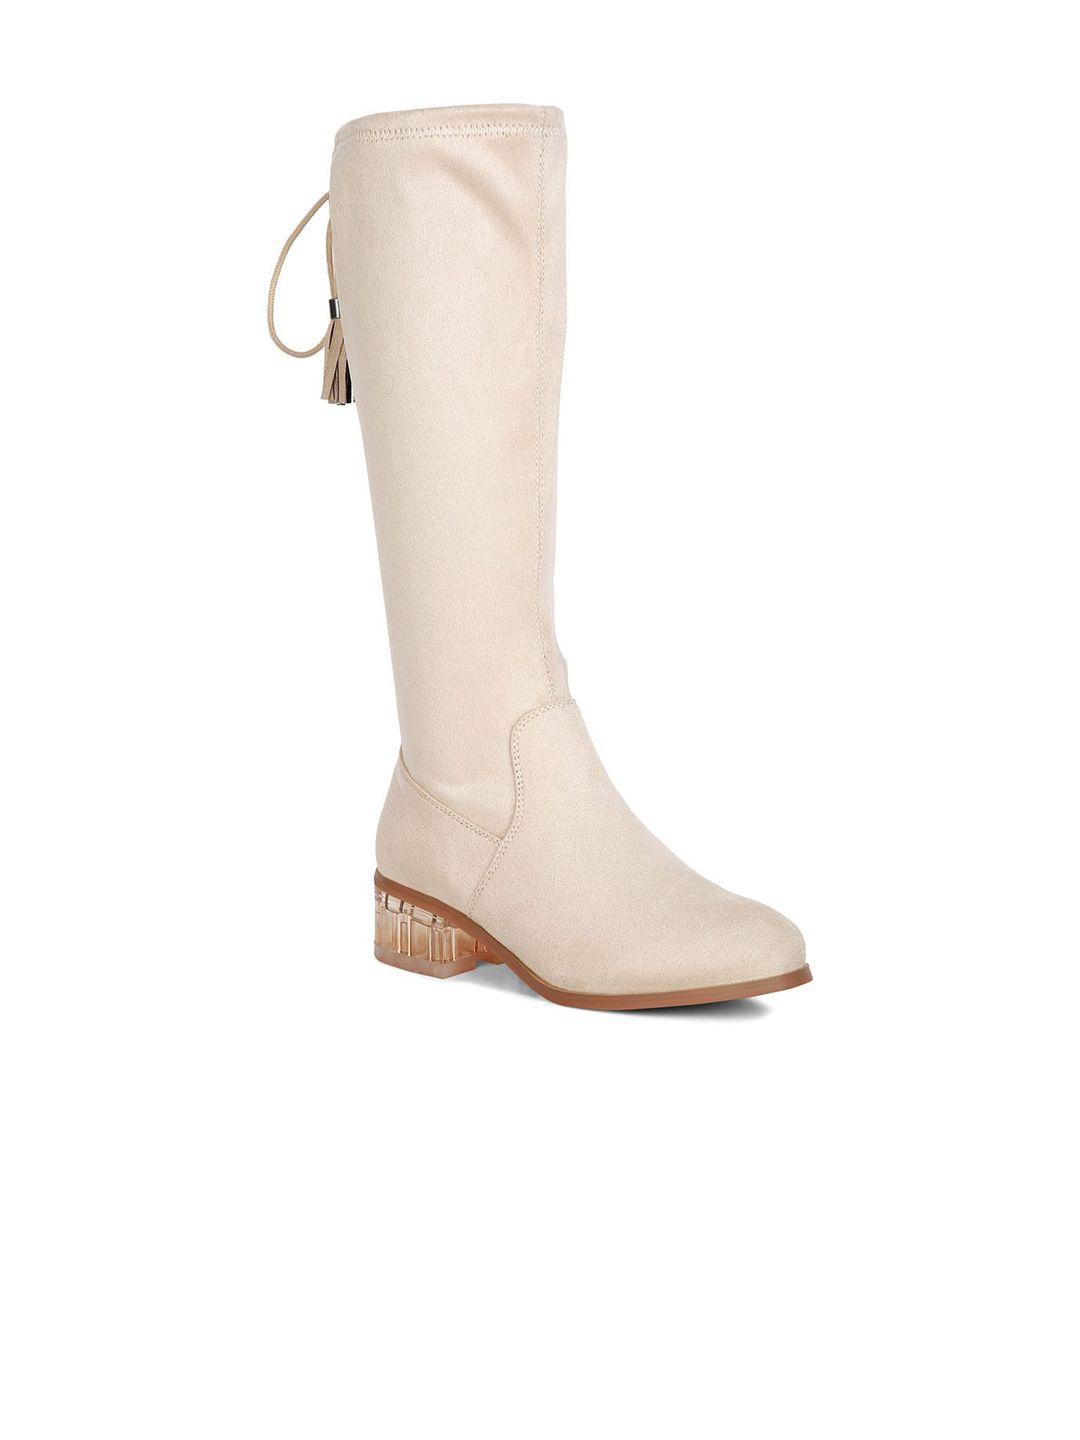 london rag women tassels detail short heel calf boots